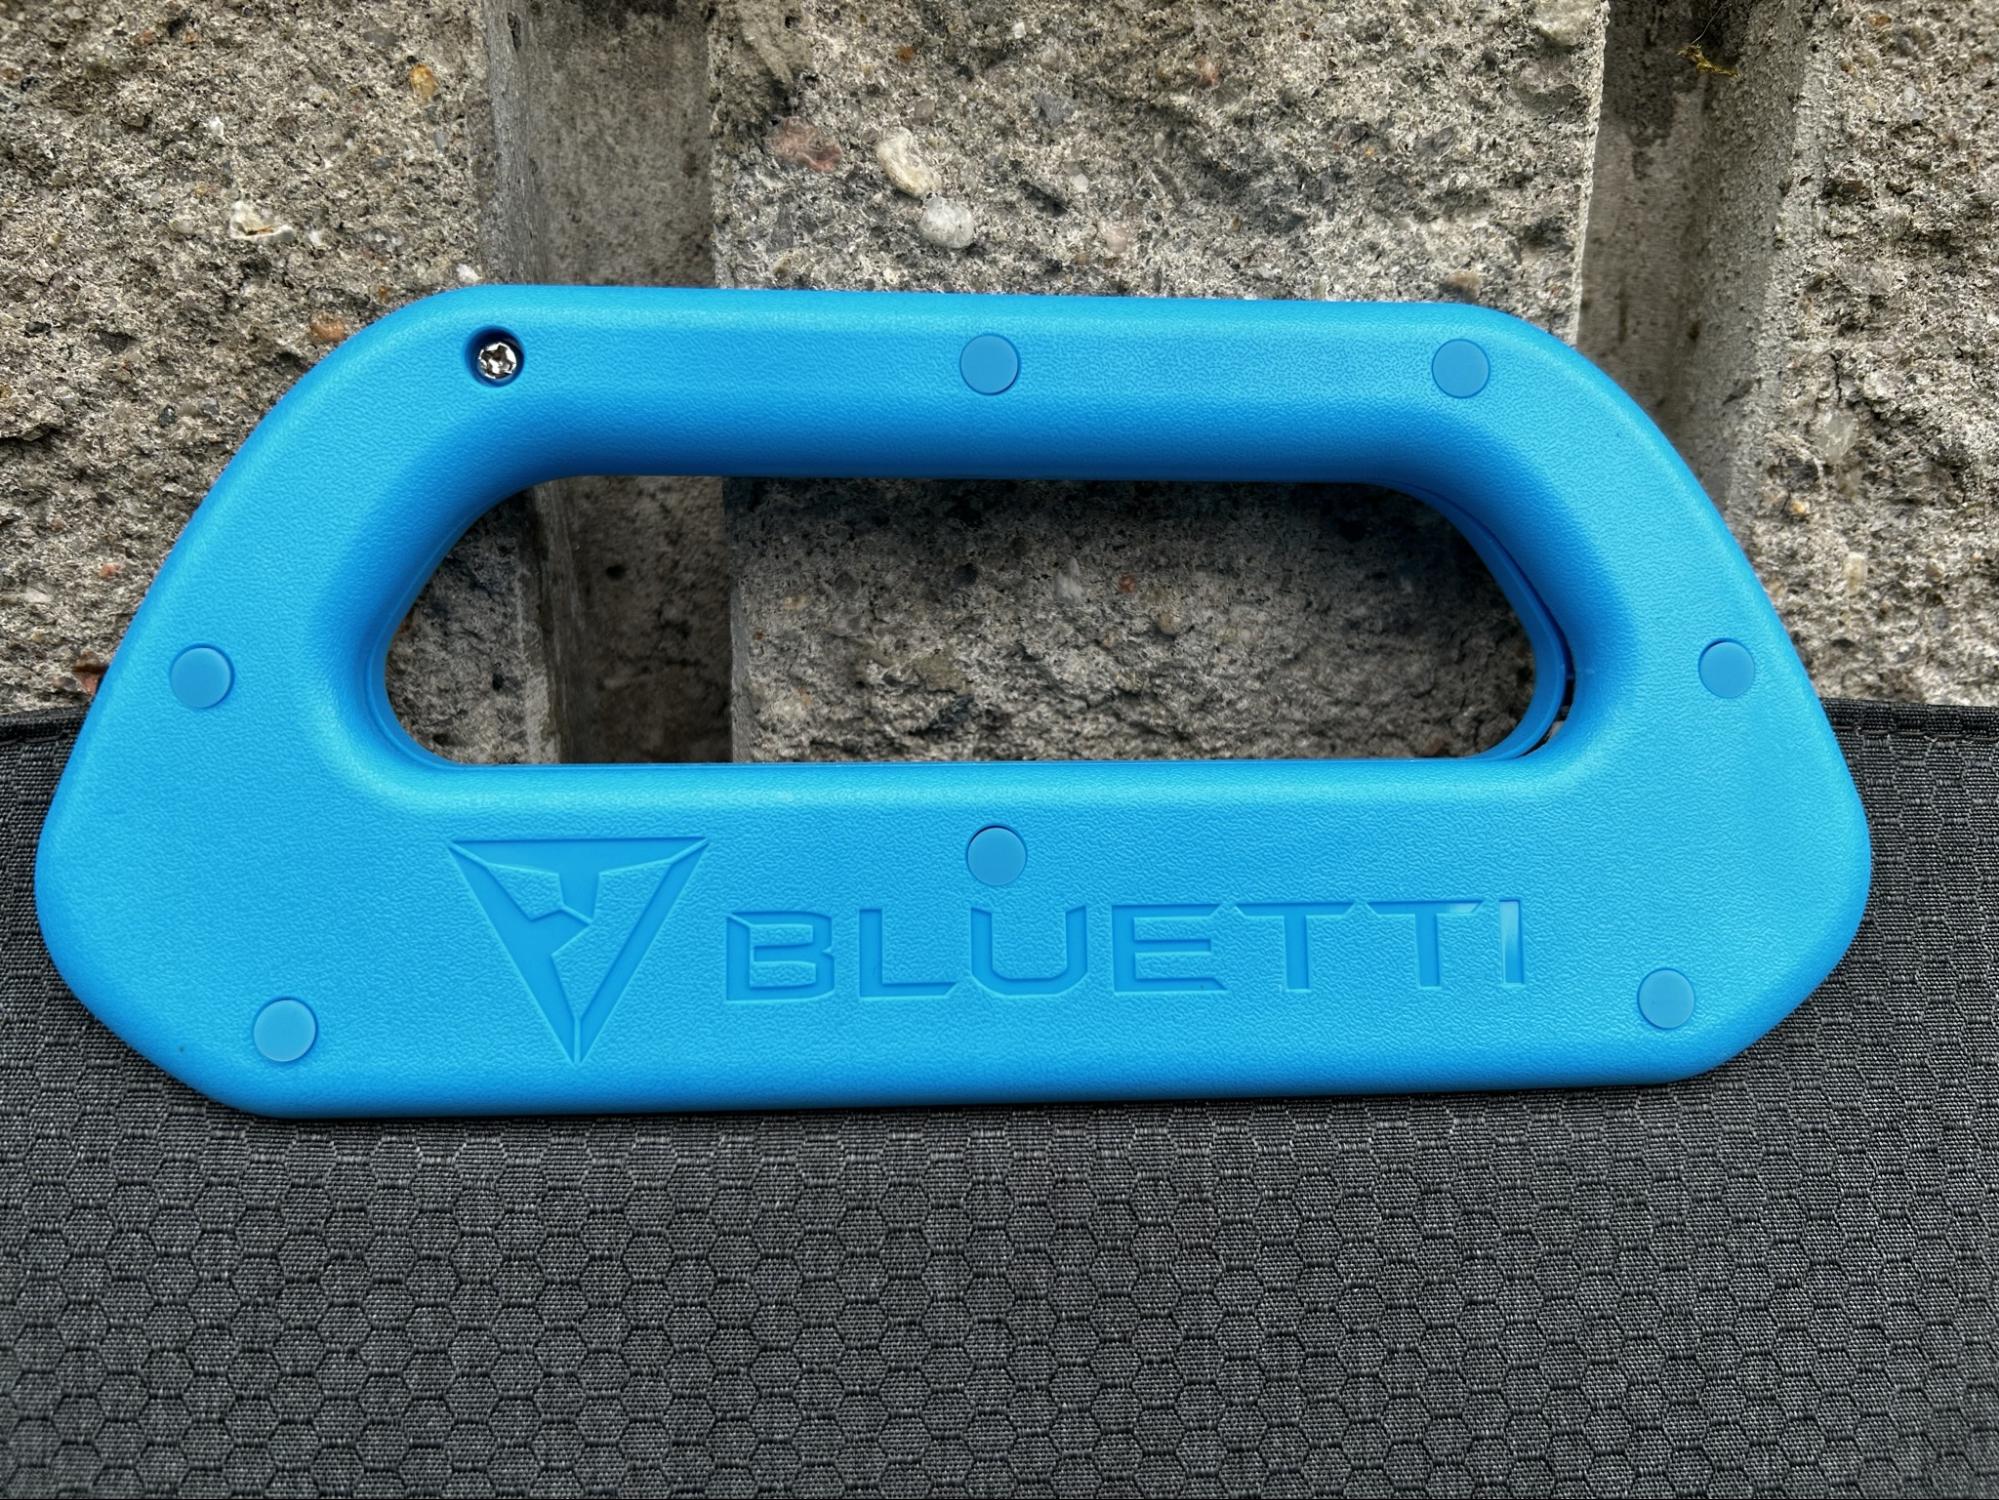 bluetti pv200 solar panel handle